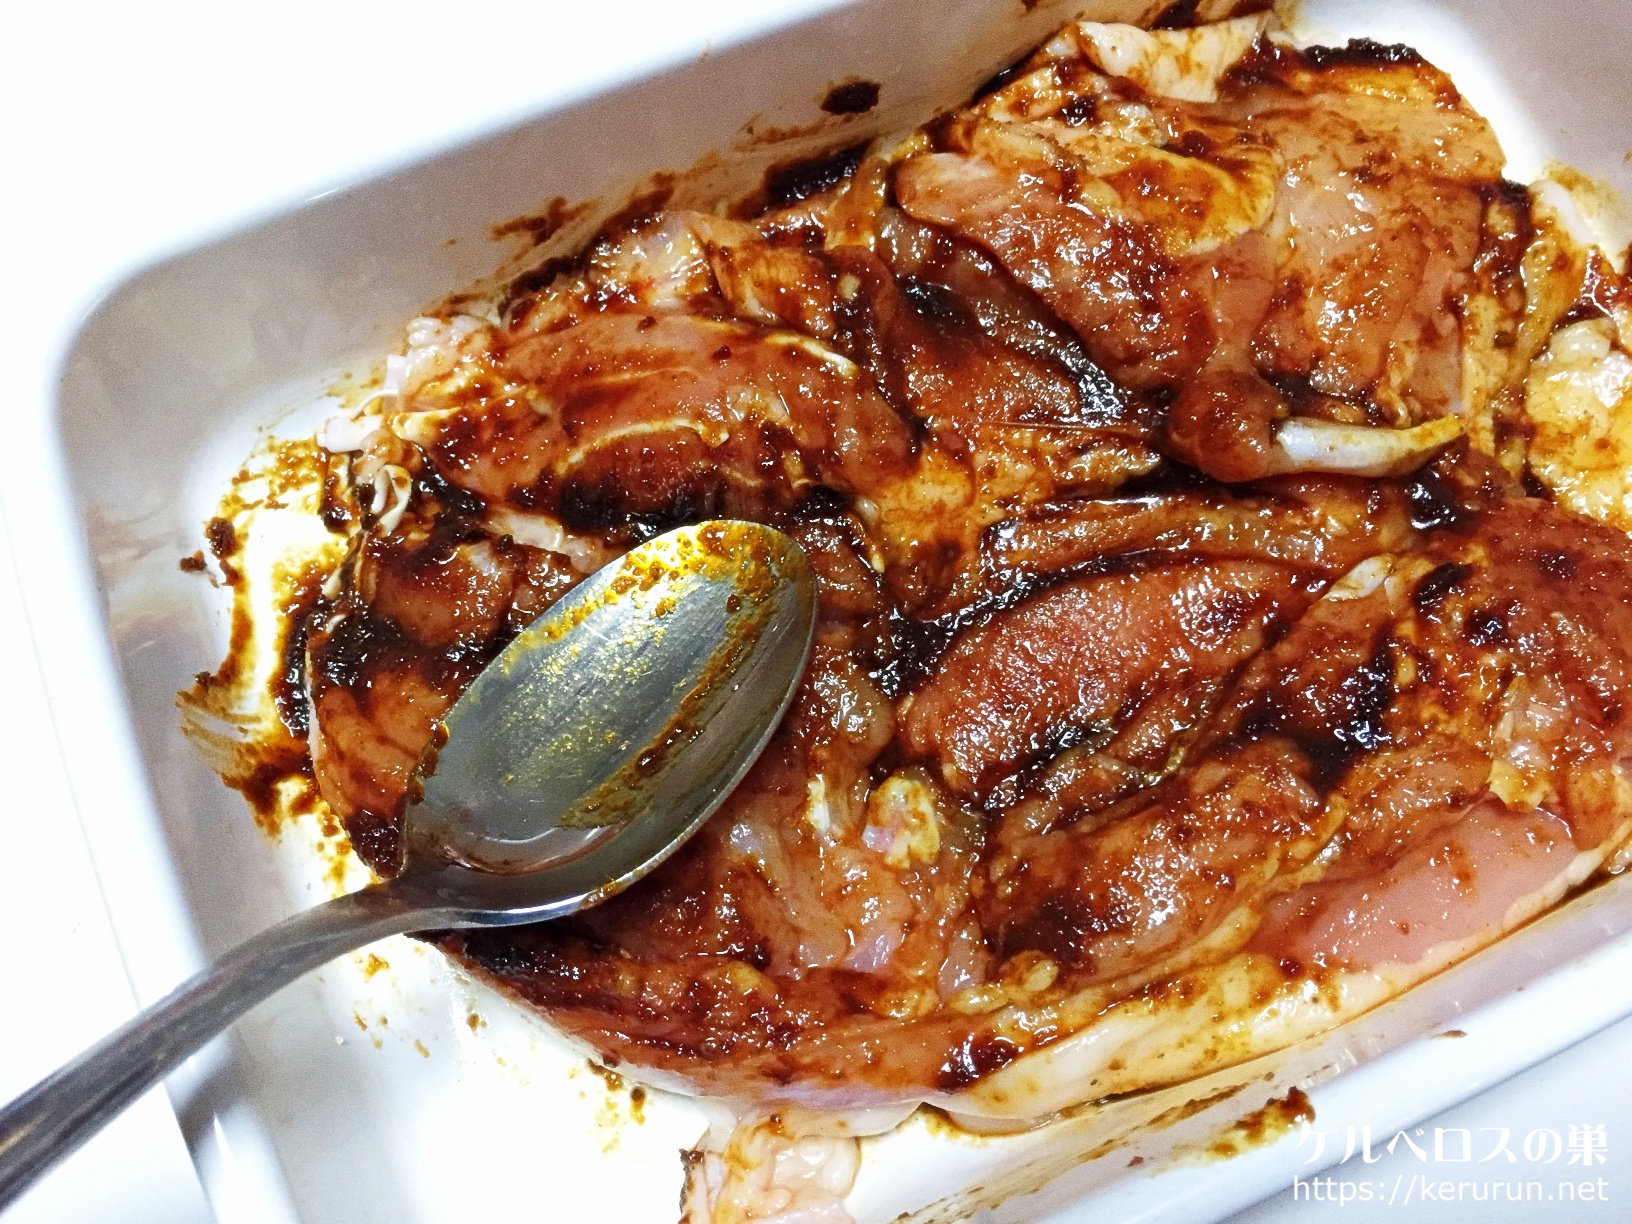 「～の素」で作る海南鶏飯とガイヤーン